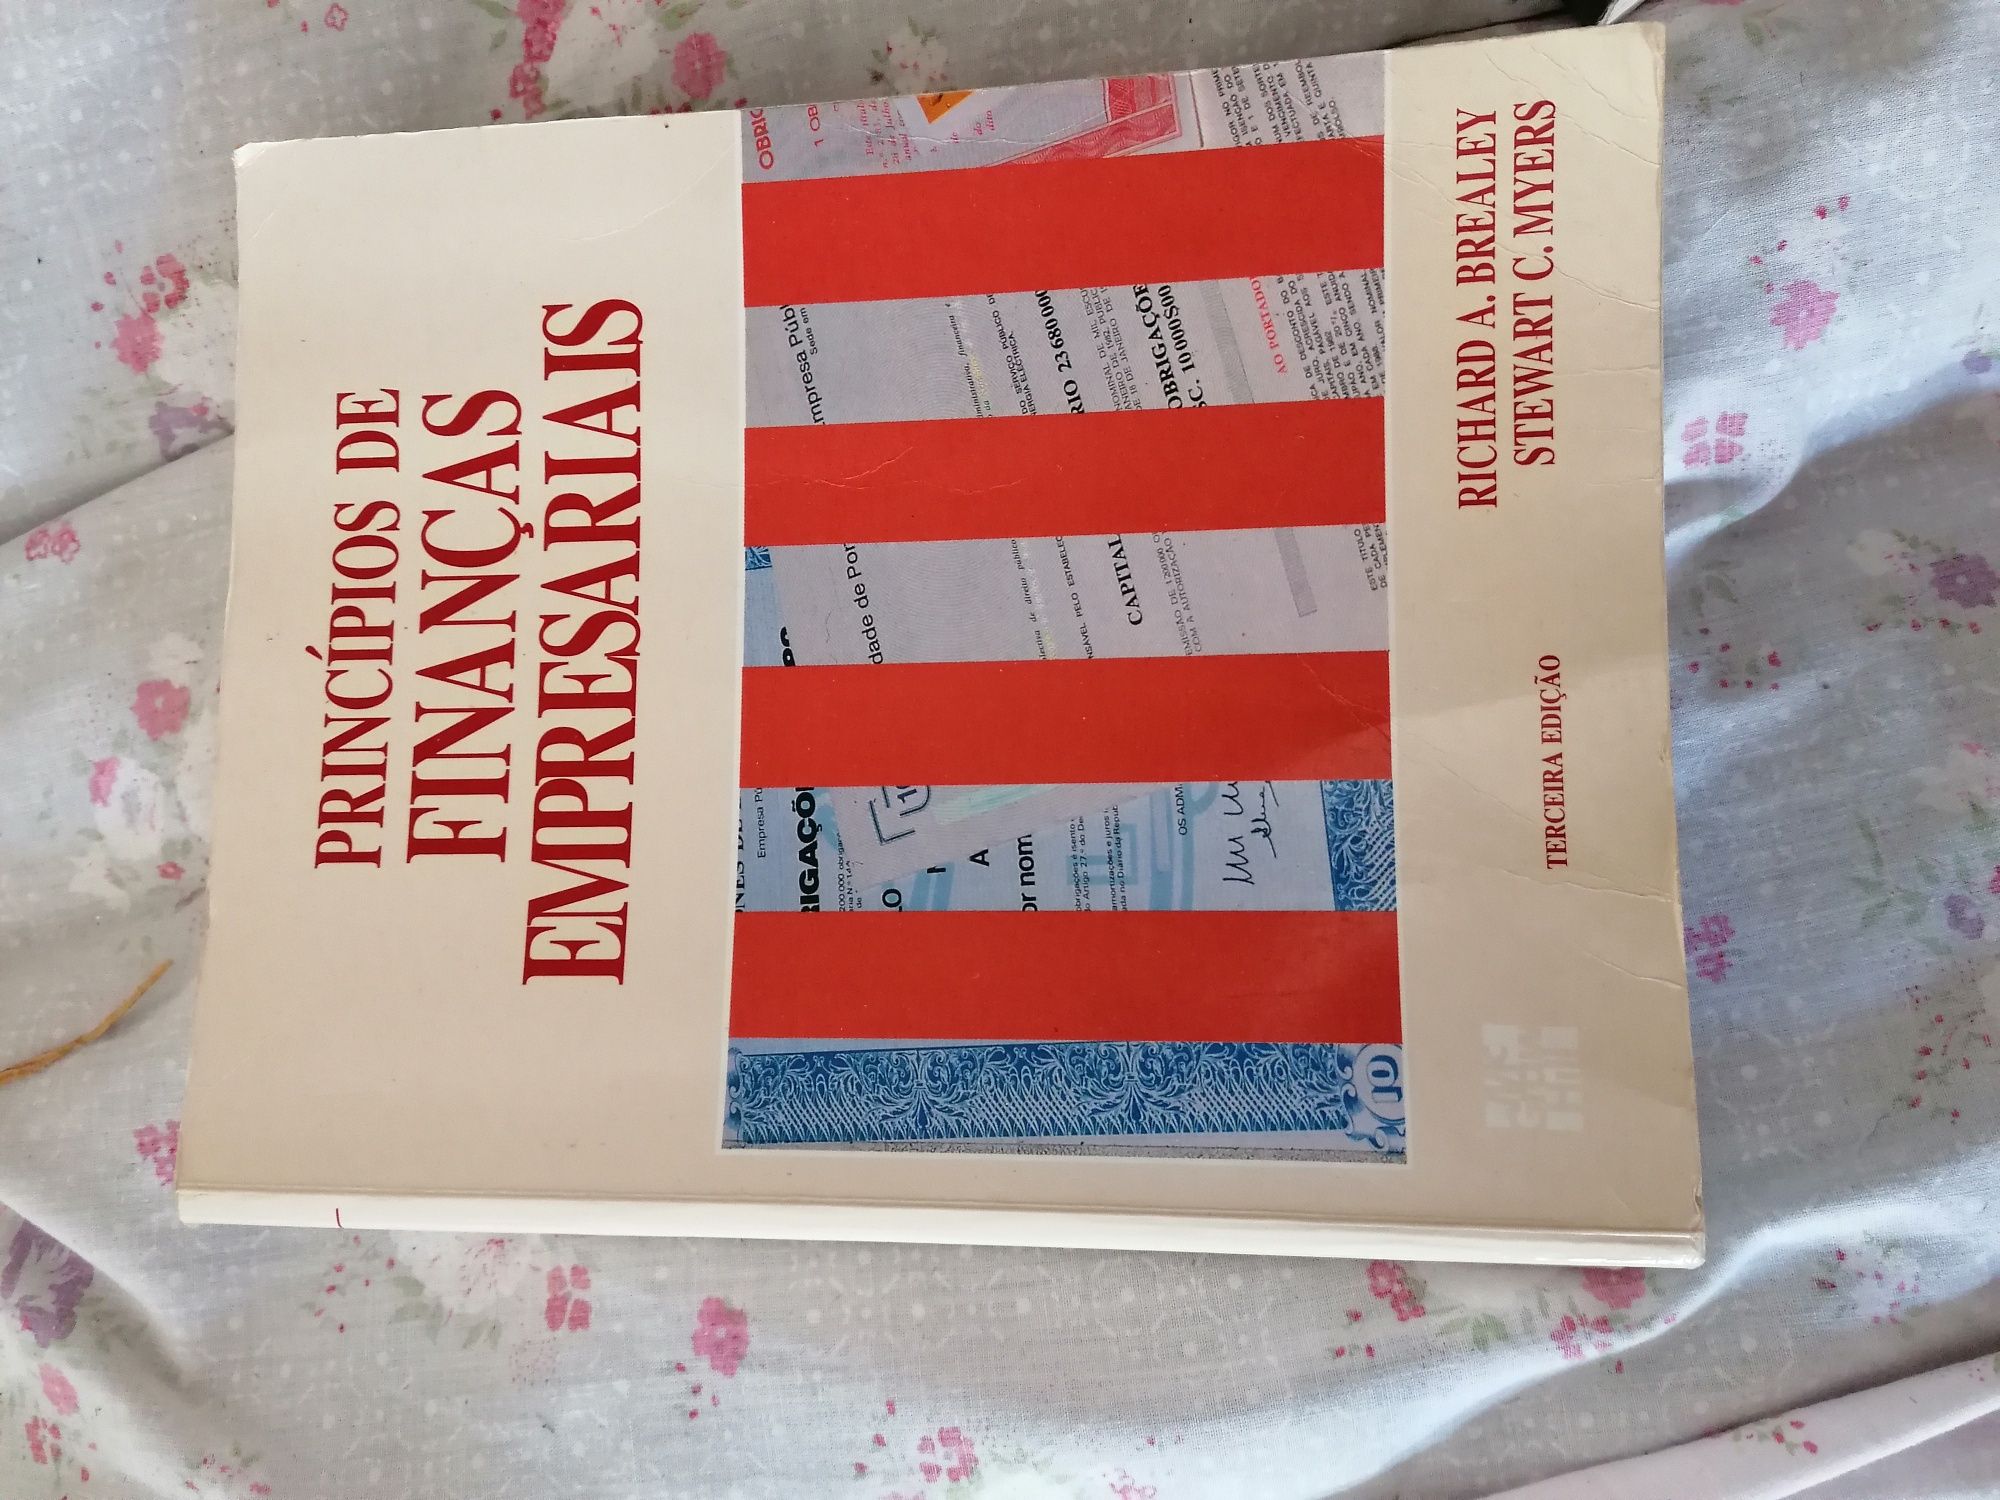 Livros Economia Samuelson, Finanças Empresariais, Gestão